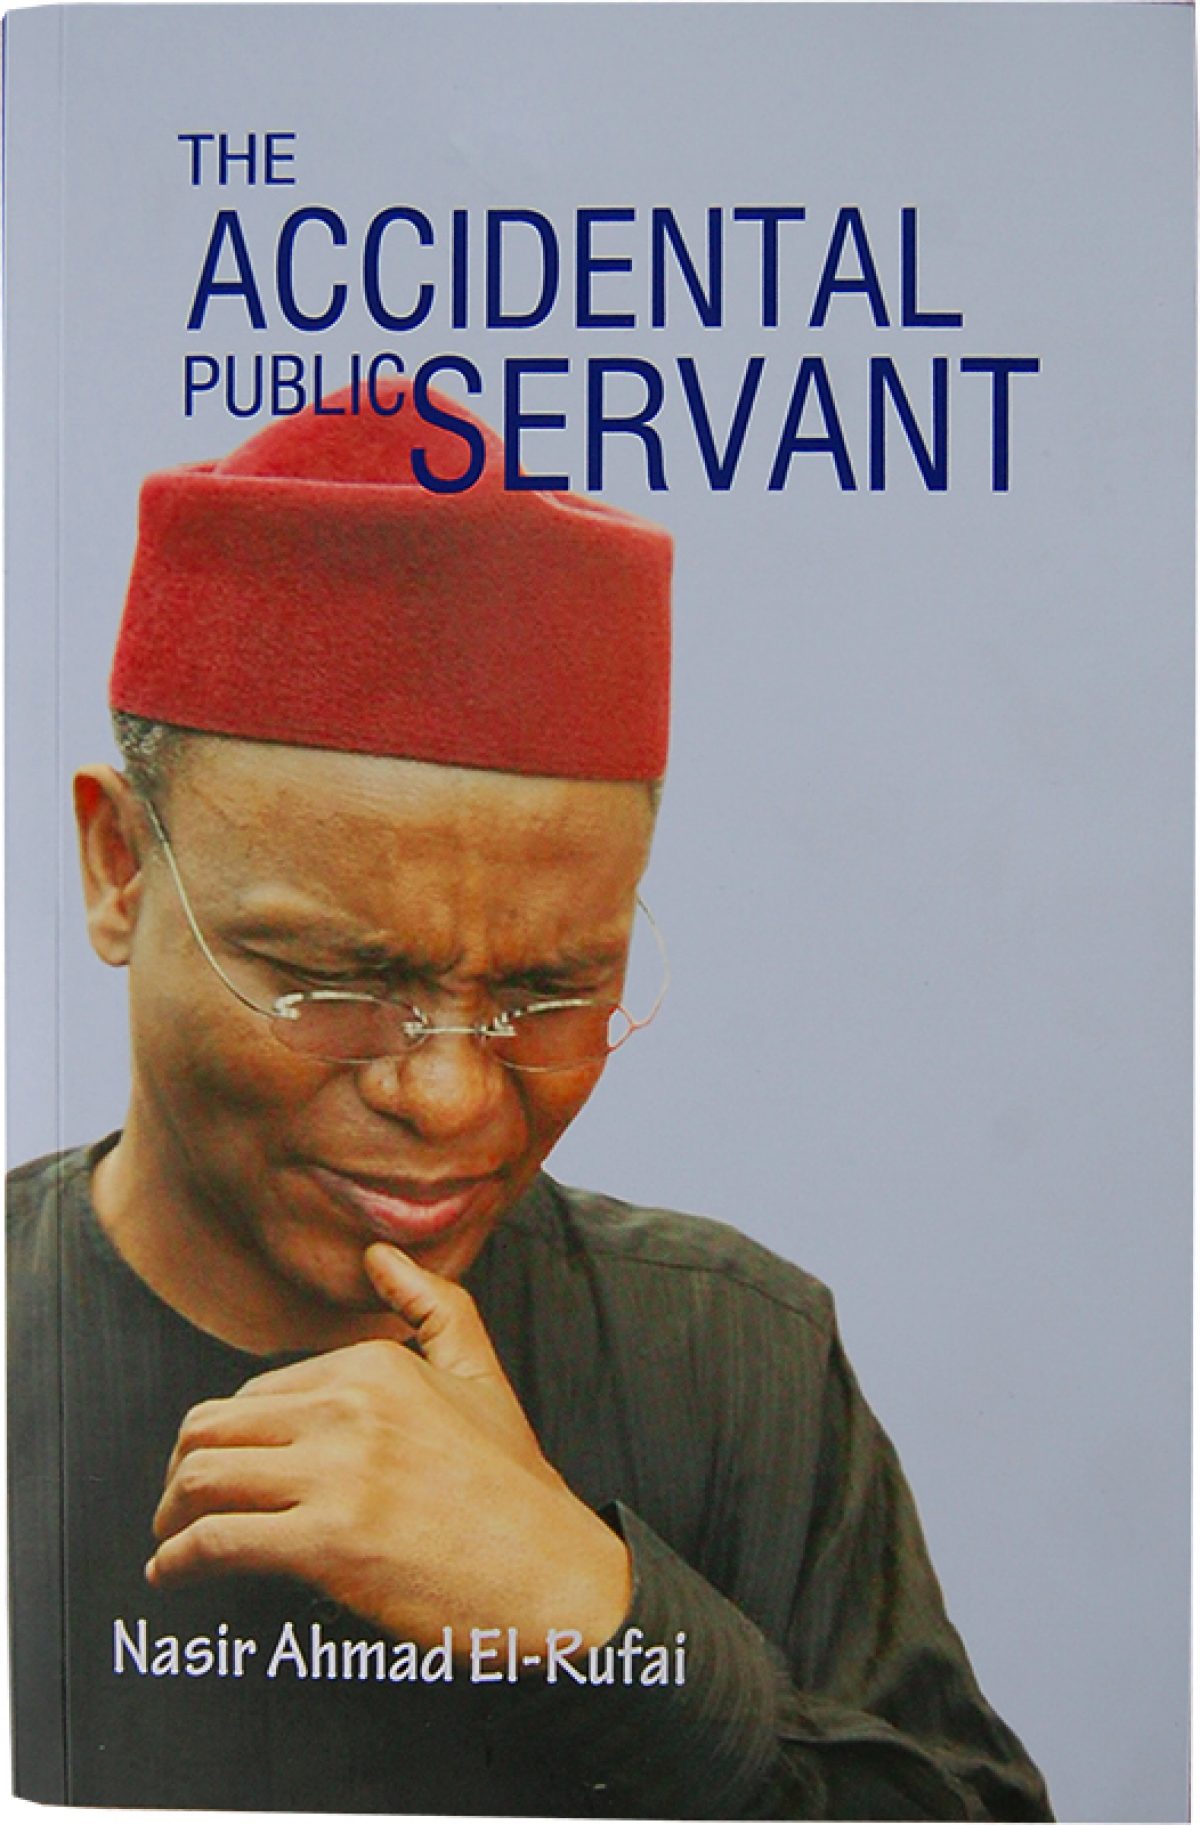 Yushau Shuaib: On El-Rufai And His Accidental Book - Daily Post Nigeria